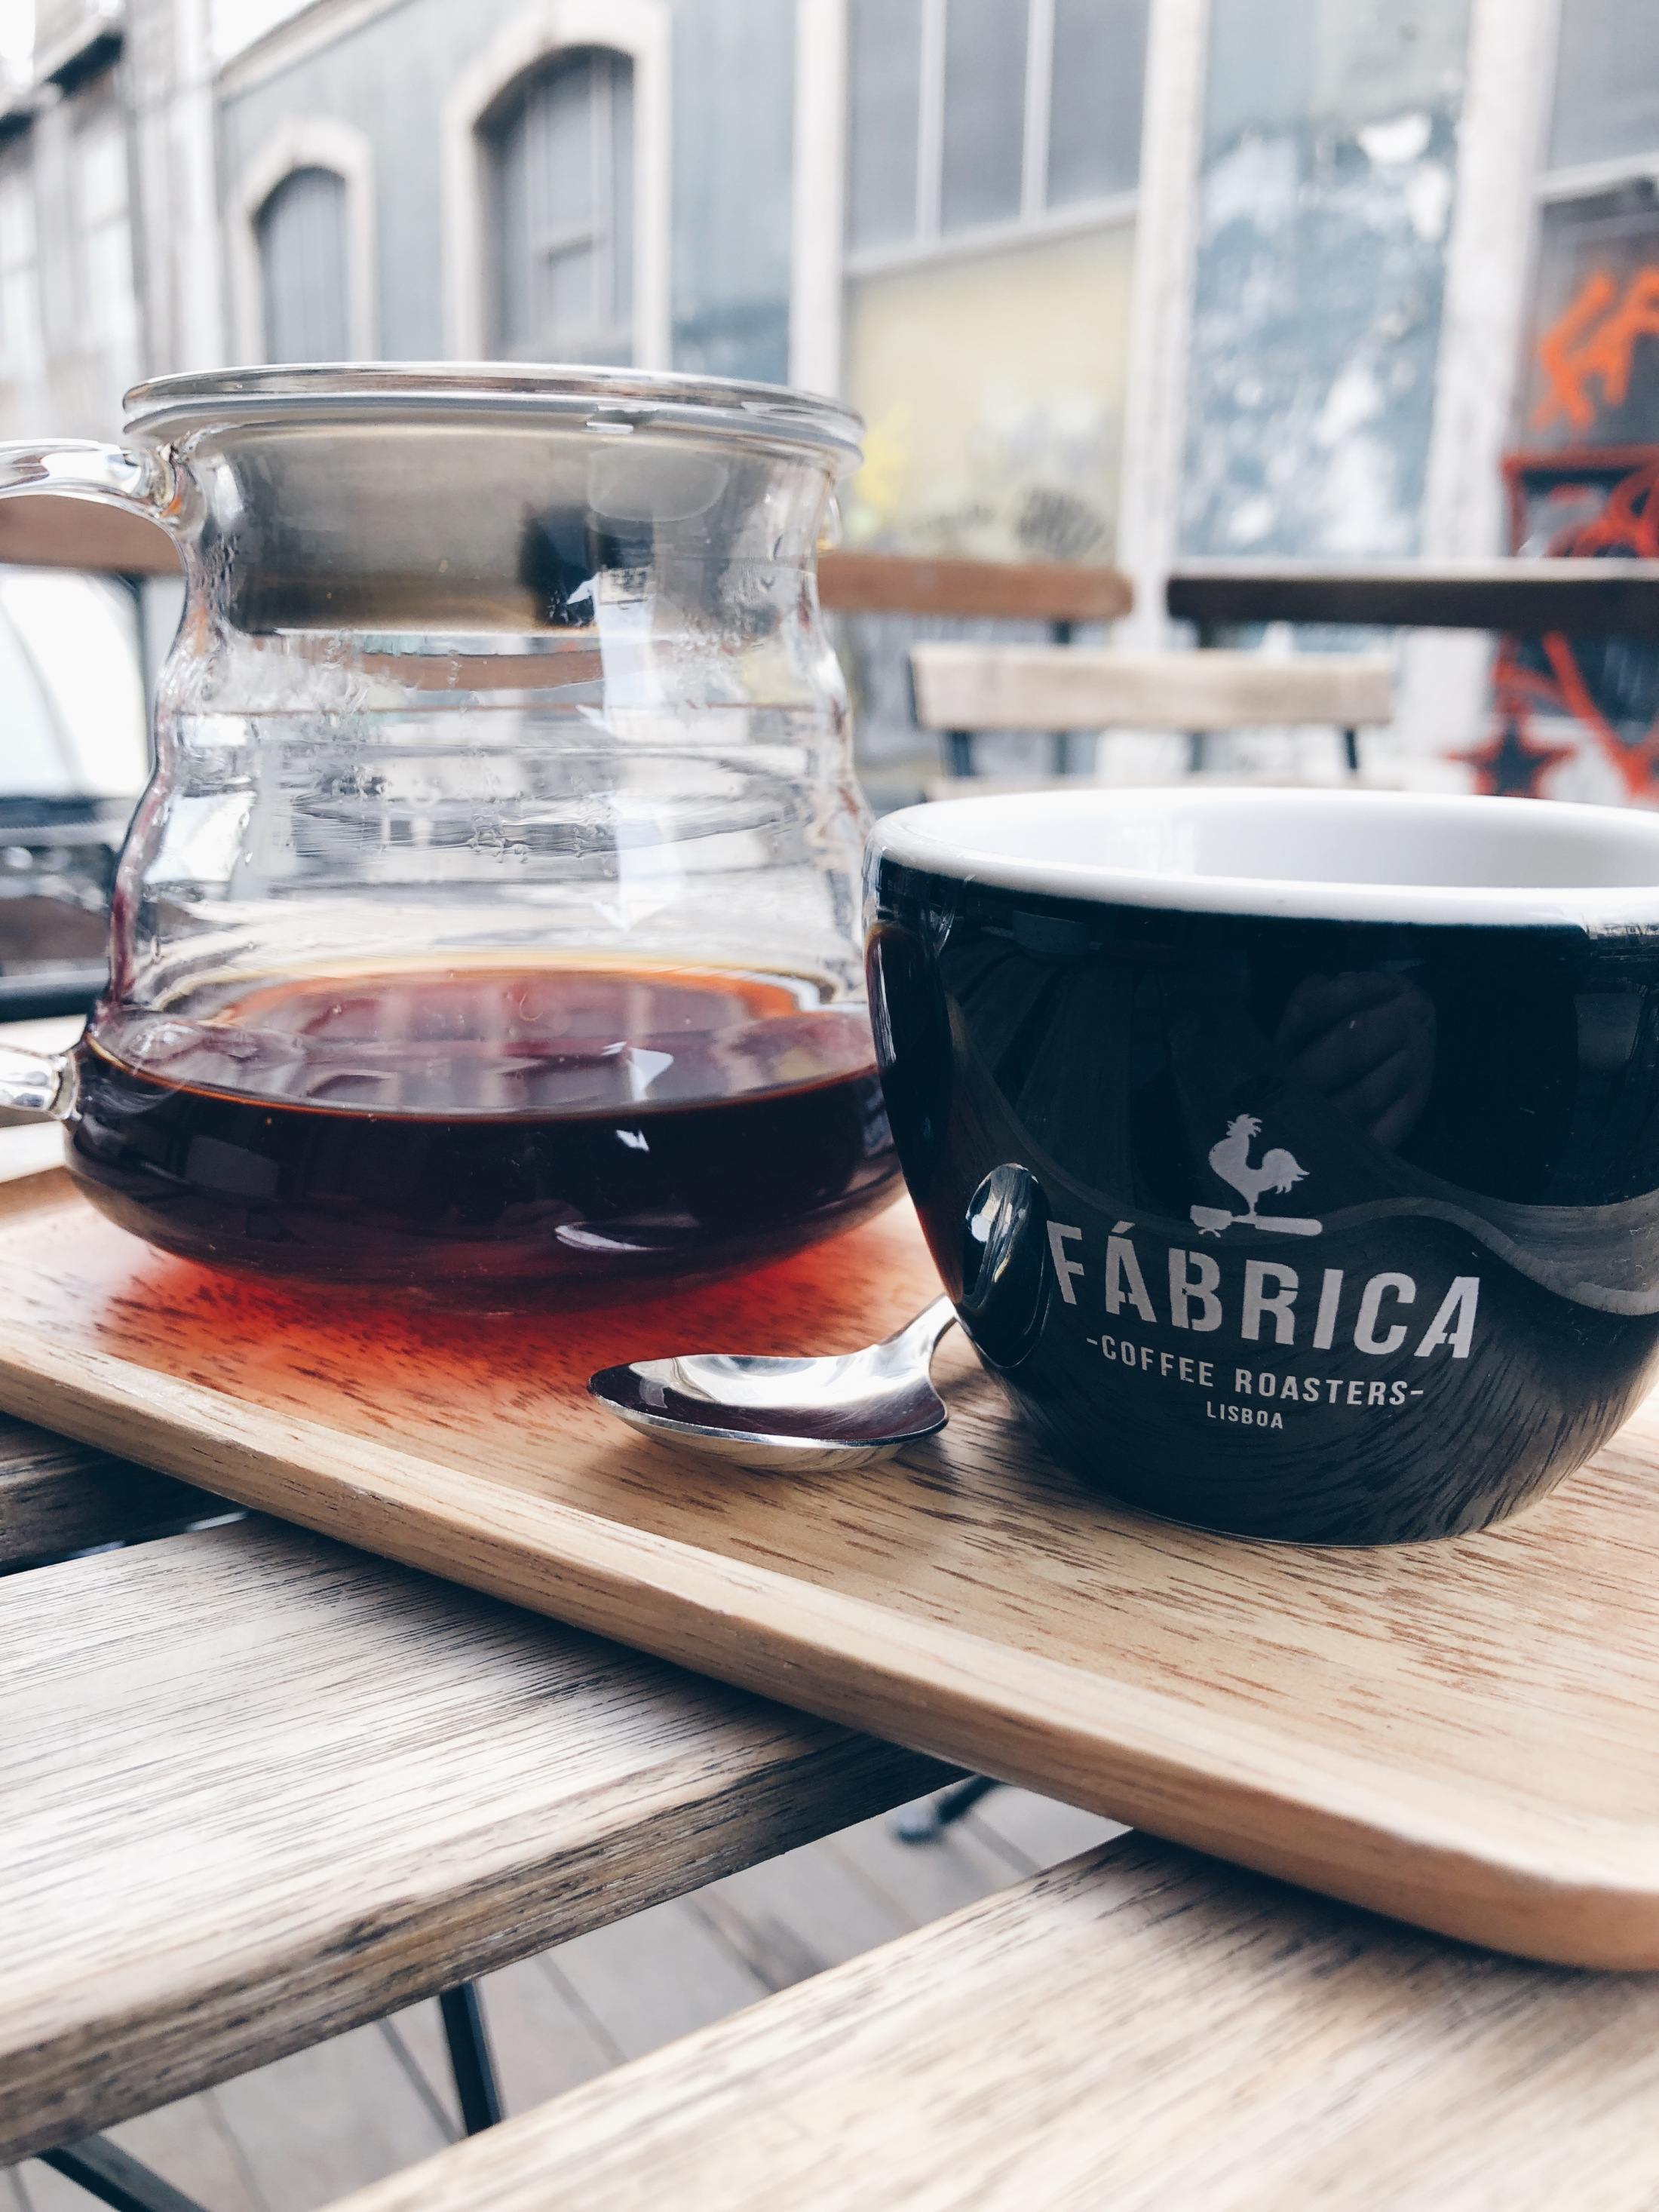 Fábrica, specialty coffee à Lisbonne